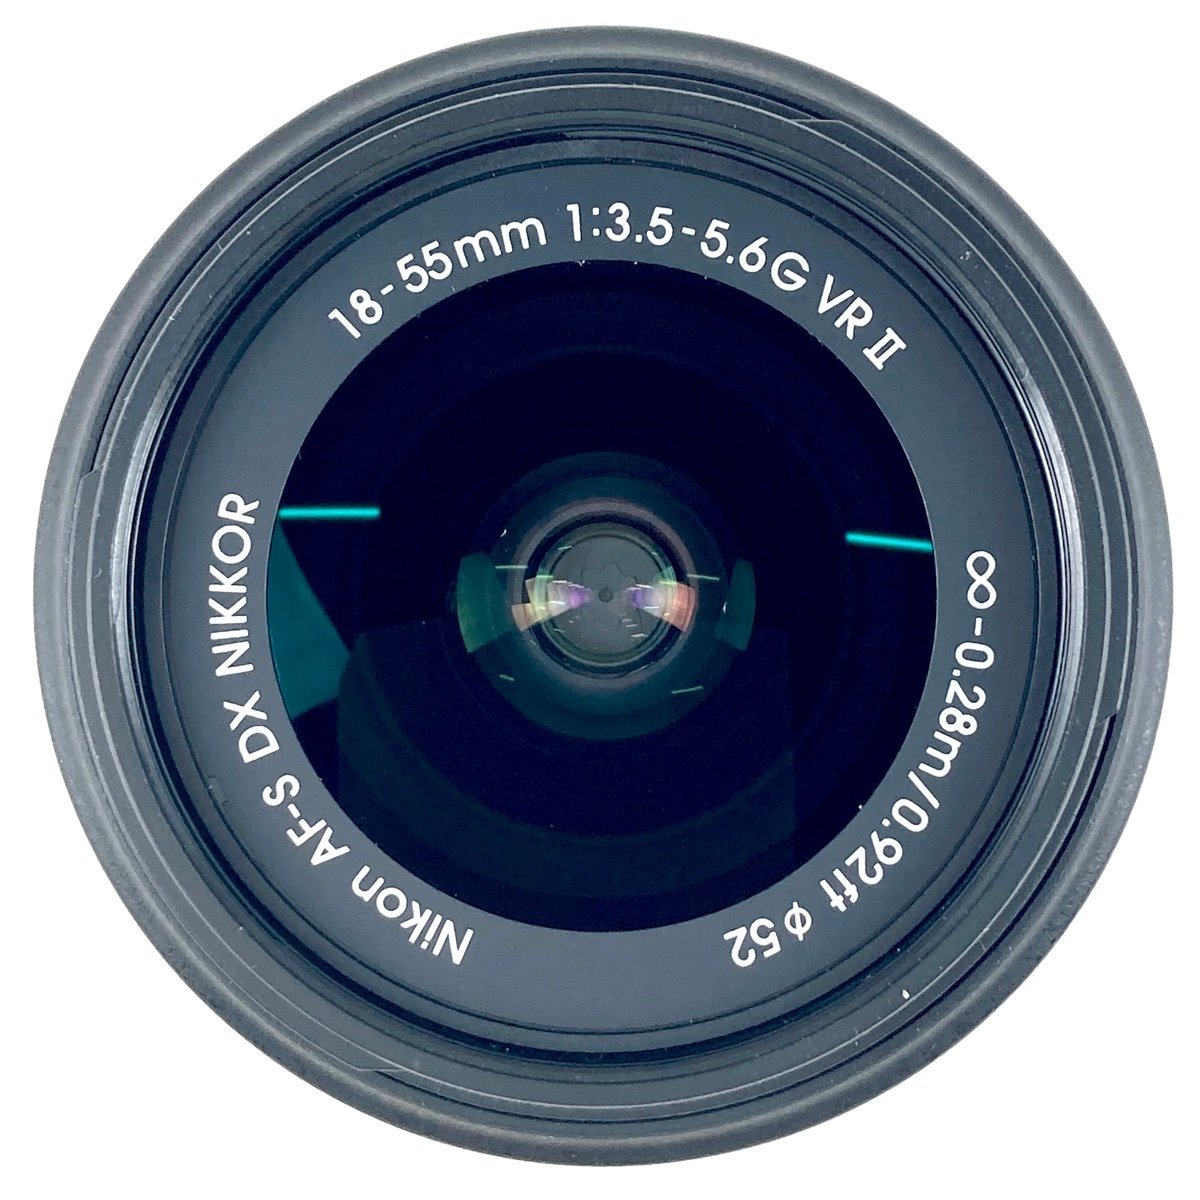 ニコン Nikon D5300 レンズキット デジタル 一眼レフカメラ 【中古】_バイセル 31051_7